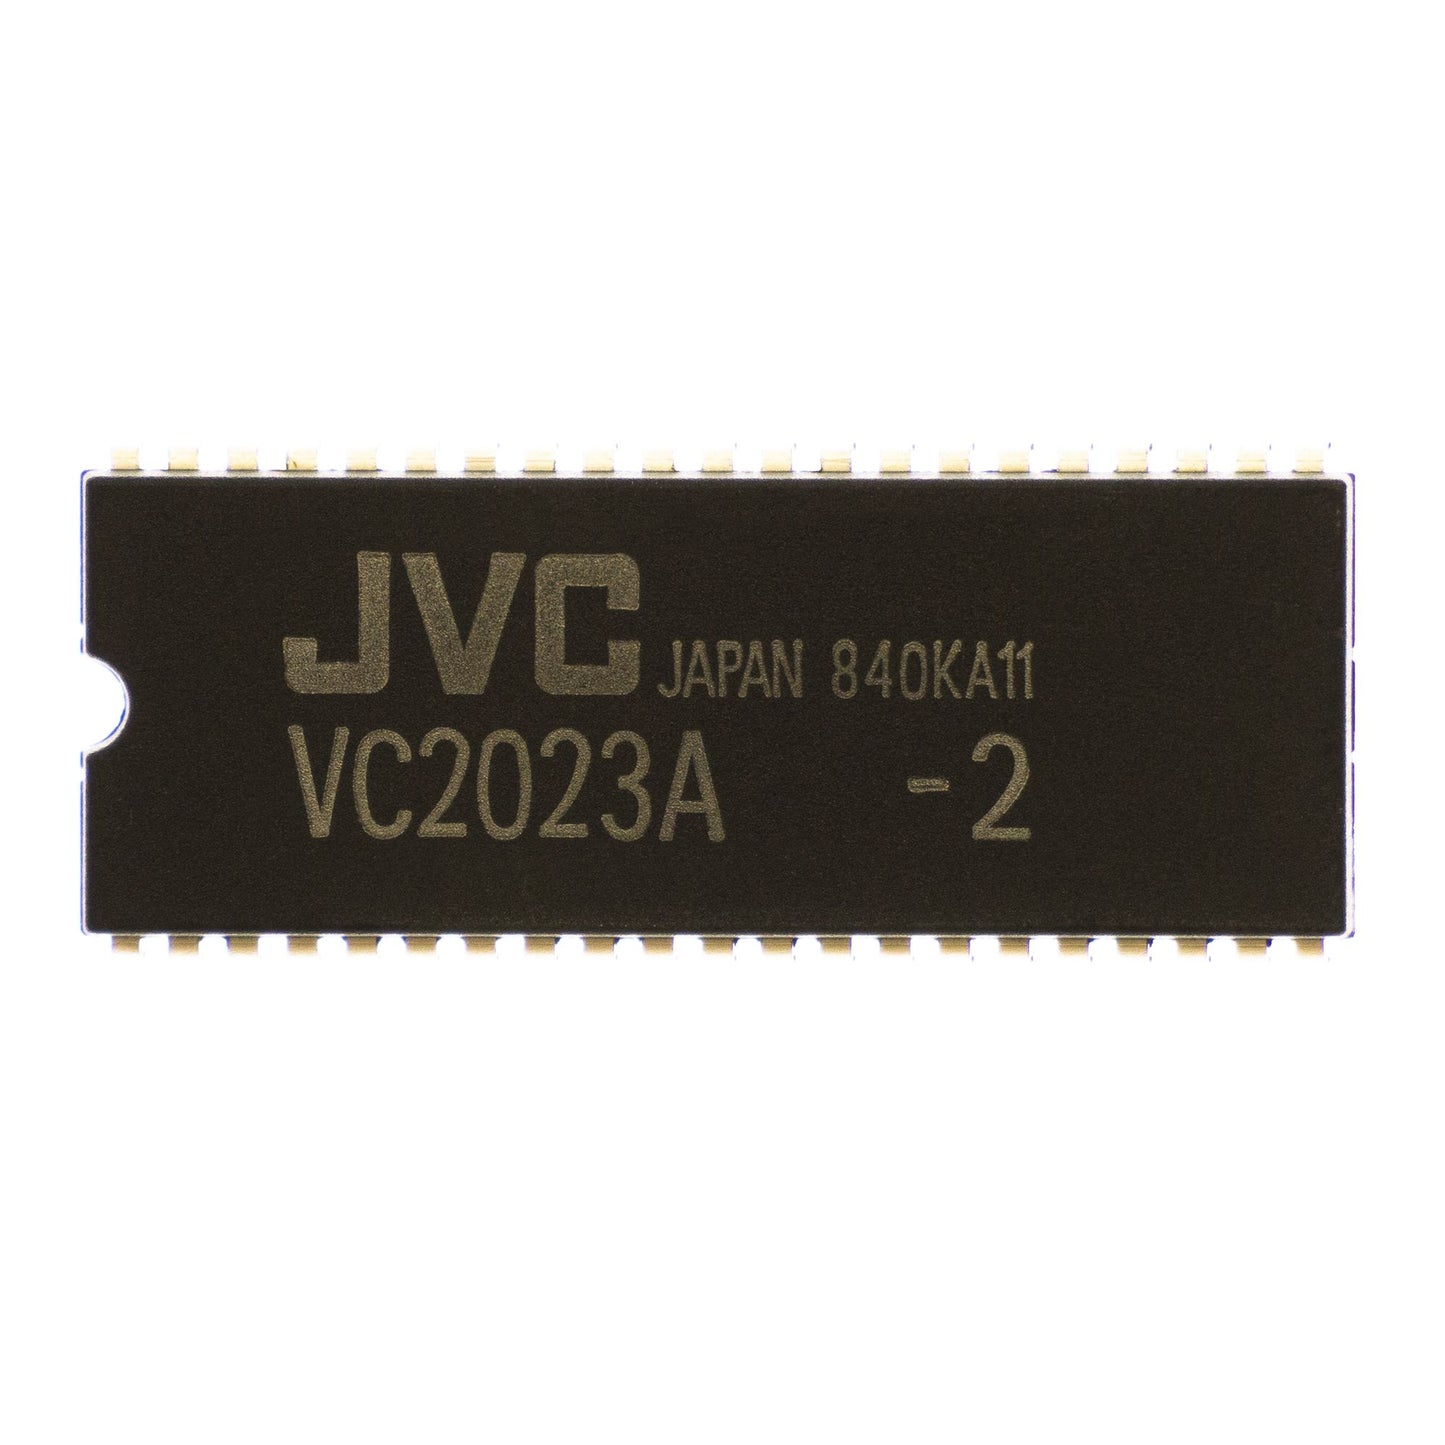 JVC VC2023A circuito integrato, transistor, componente elettronico, 42 contatti